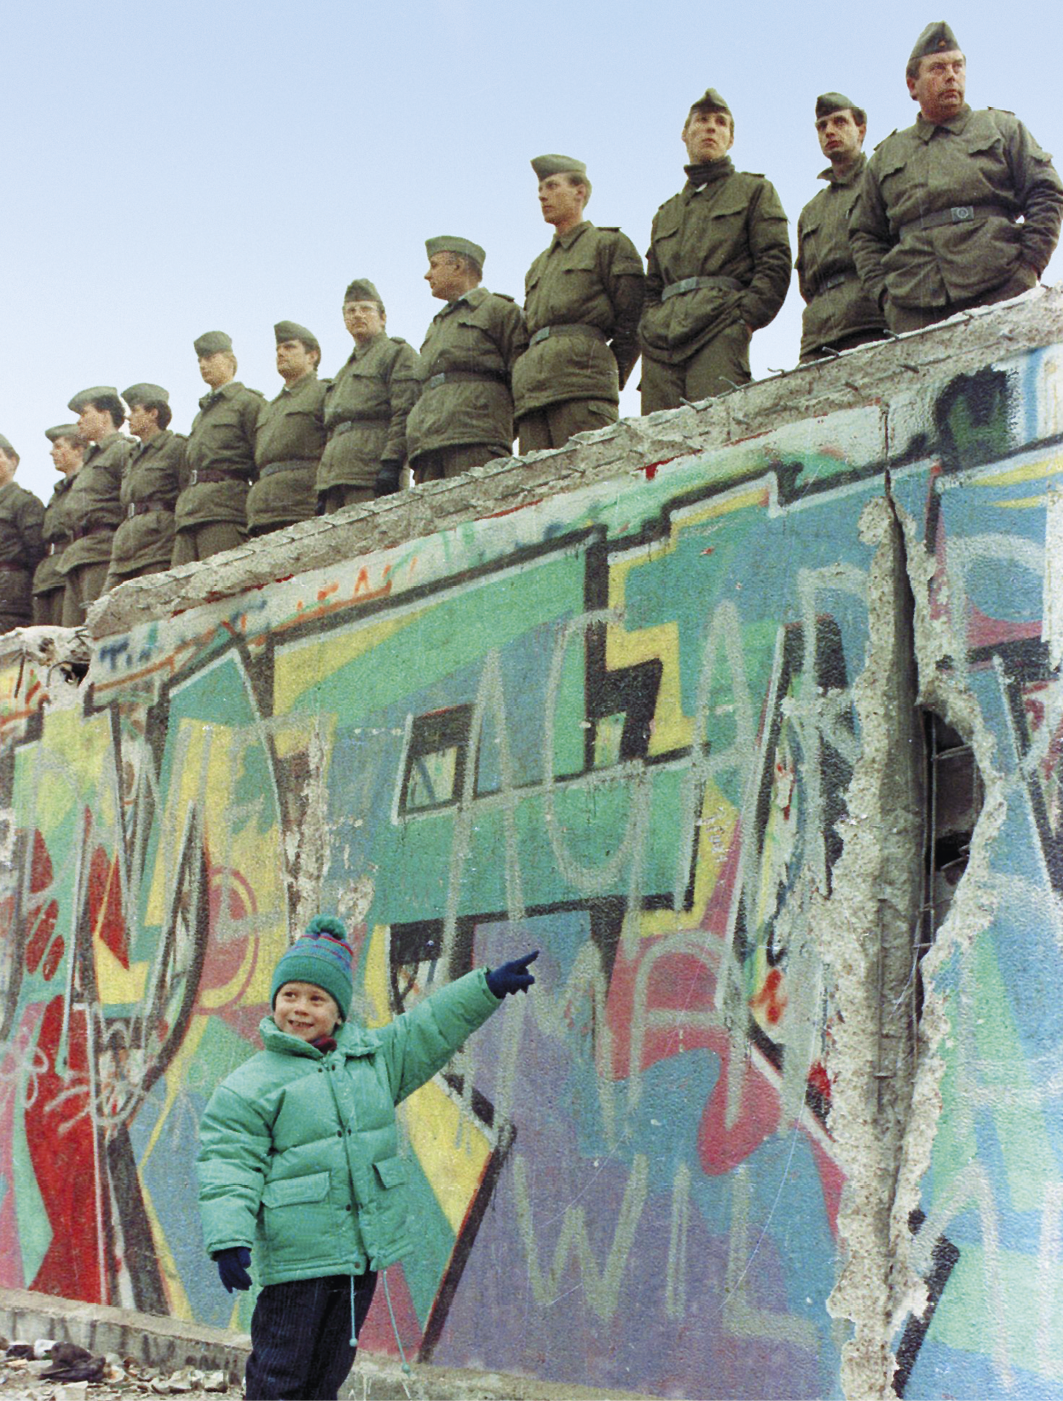 Fotografia. Destaque para uma criança de jaqueta e gorro verde, de pé, sorrindo e apontando para um muro alto, coberto de grafite colorido. Em cima do muro, há diversos soldados de uniforme militar e com as mãos para trás, posicionados um ao lado do outro.